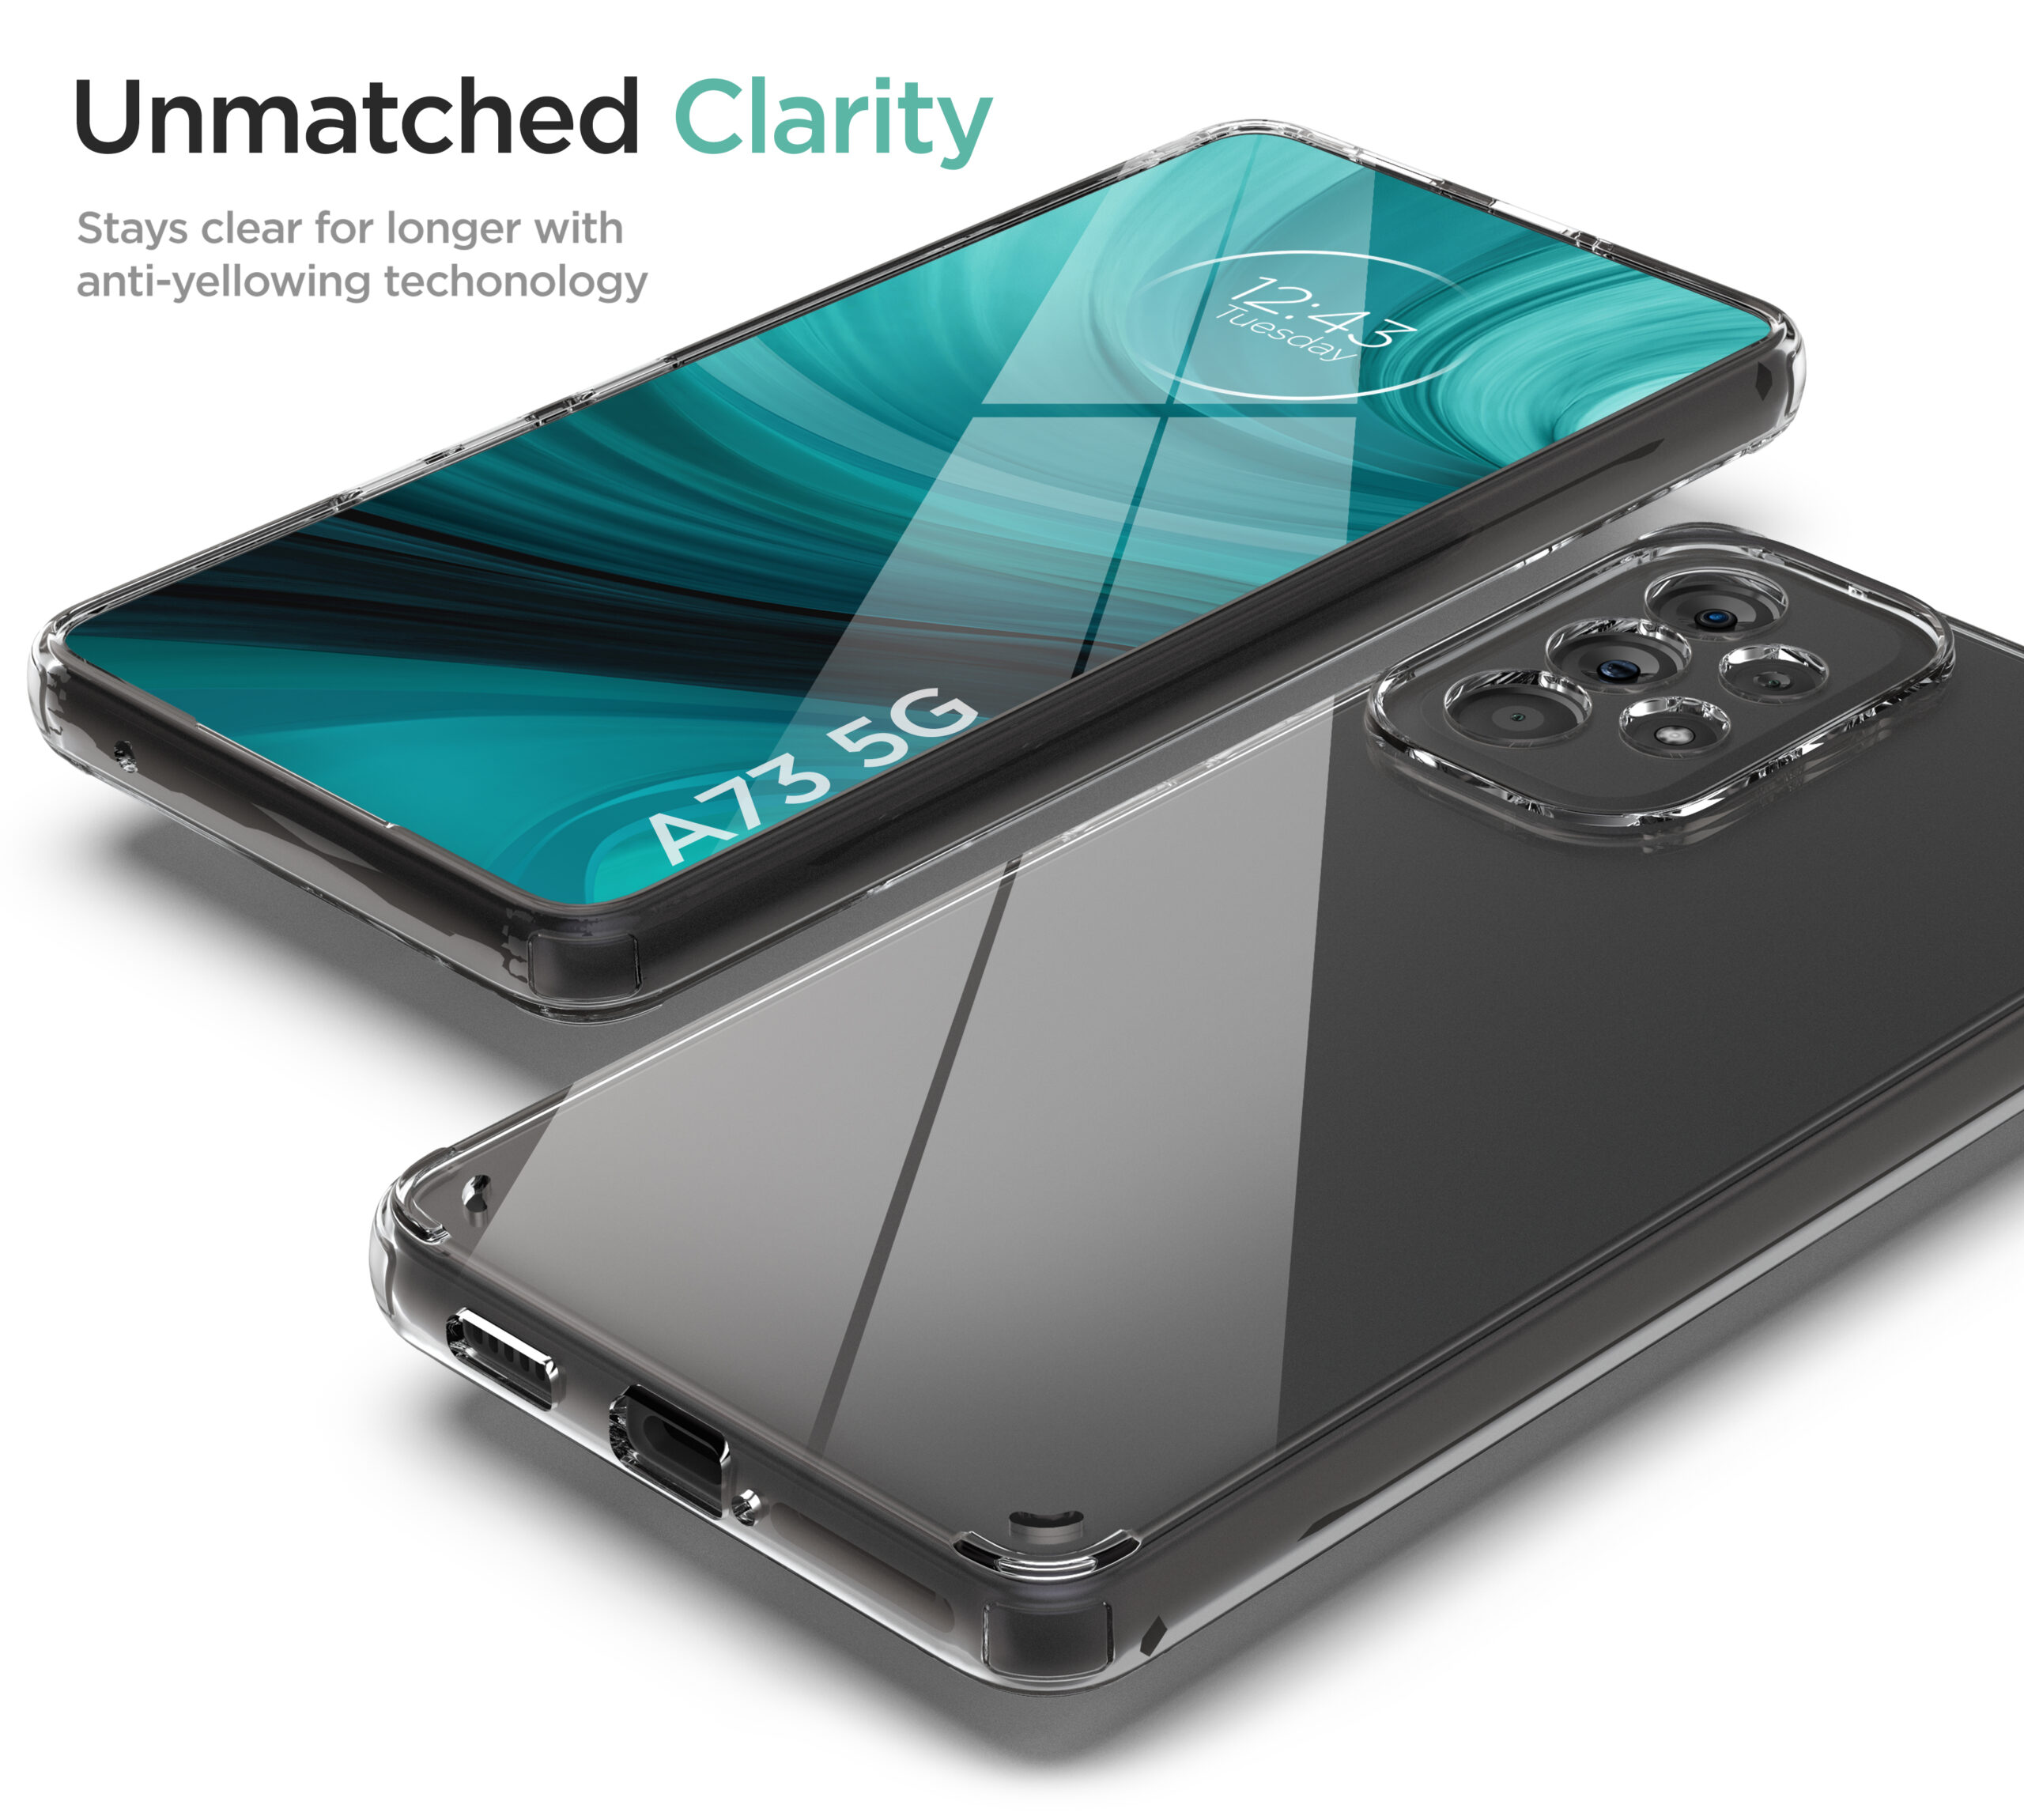 Ốp lưng silicon chống sốc cho Samsung Galaxy A73 5G hiệu HOTCASE - siêu mỏng 0.6mm, độ trong tuyệt đối, chống trầy xước, chống ố vàng, tản nhiệt tốt - Hàng nhập khẩu